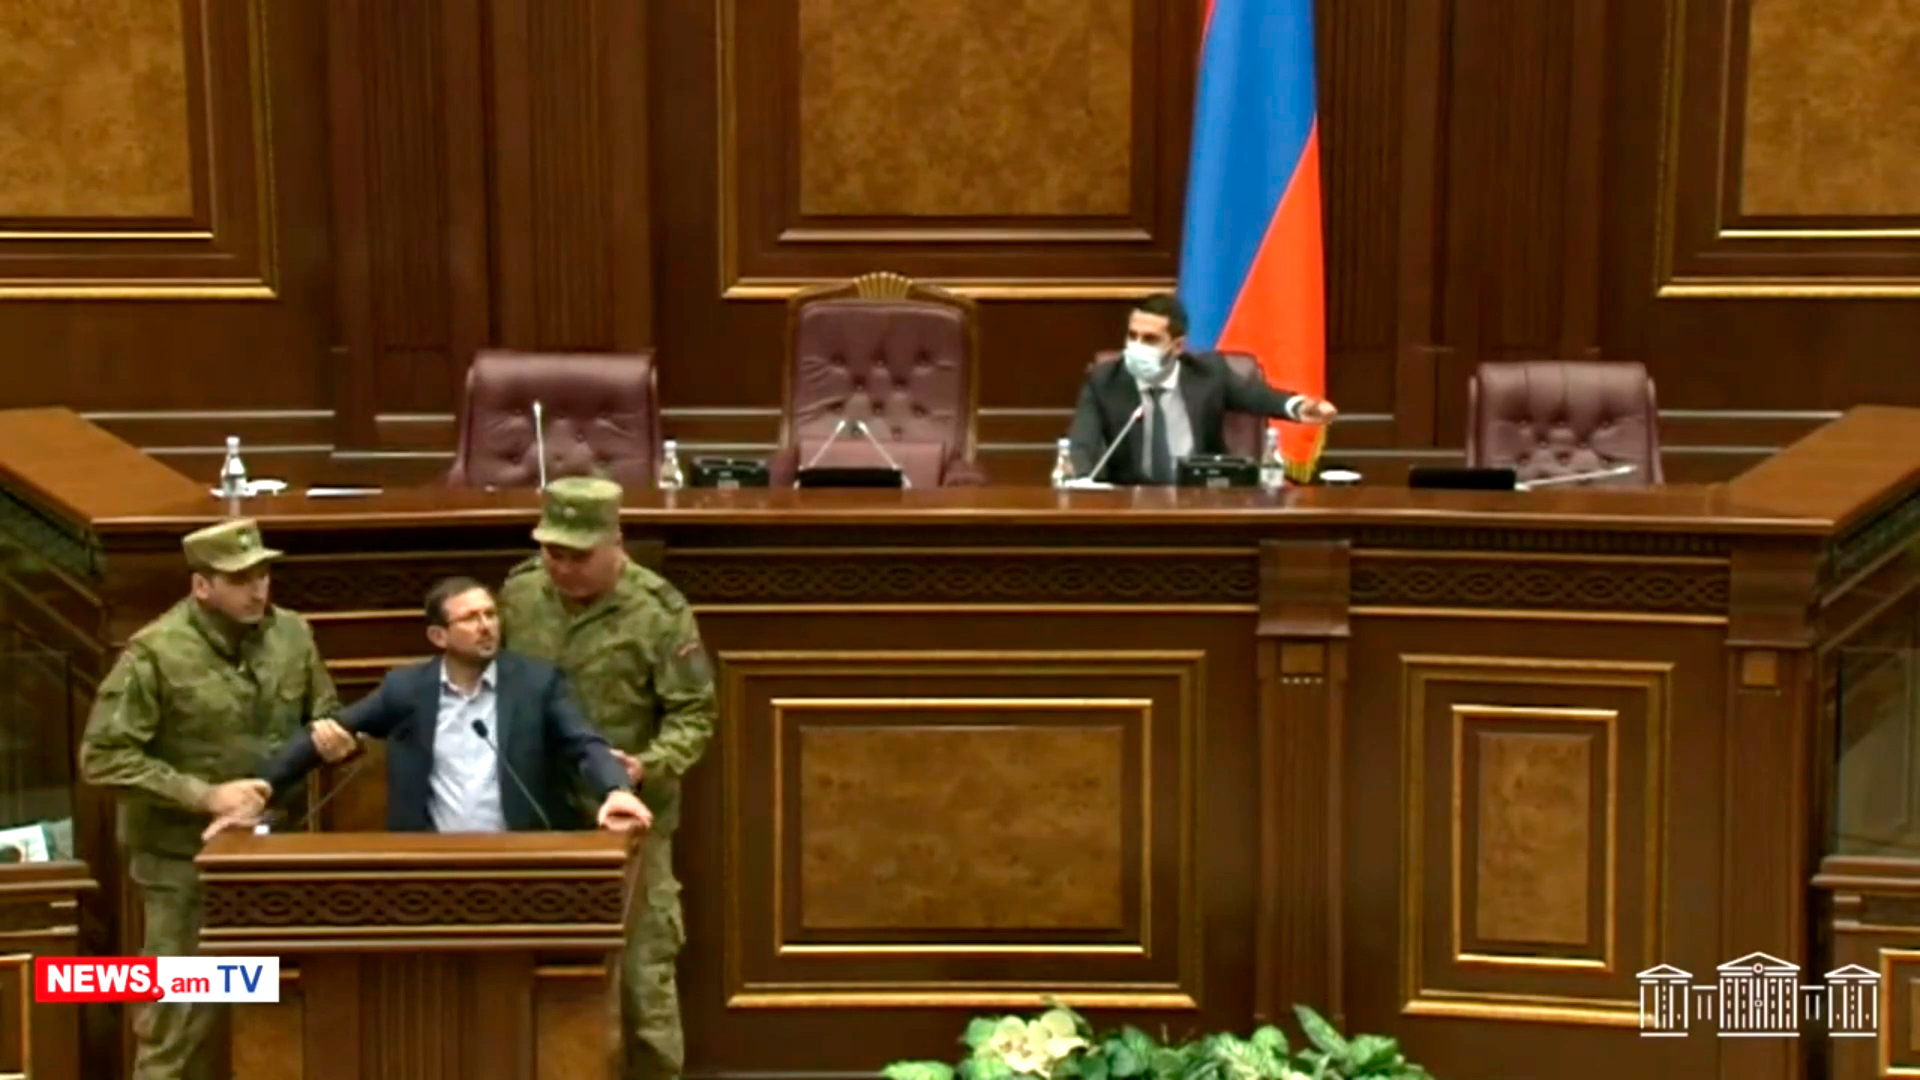 Ermənistan parlamentində qalmaqal: Deputatın qollarını burub zaldan çıxardılar - VİDEO